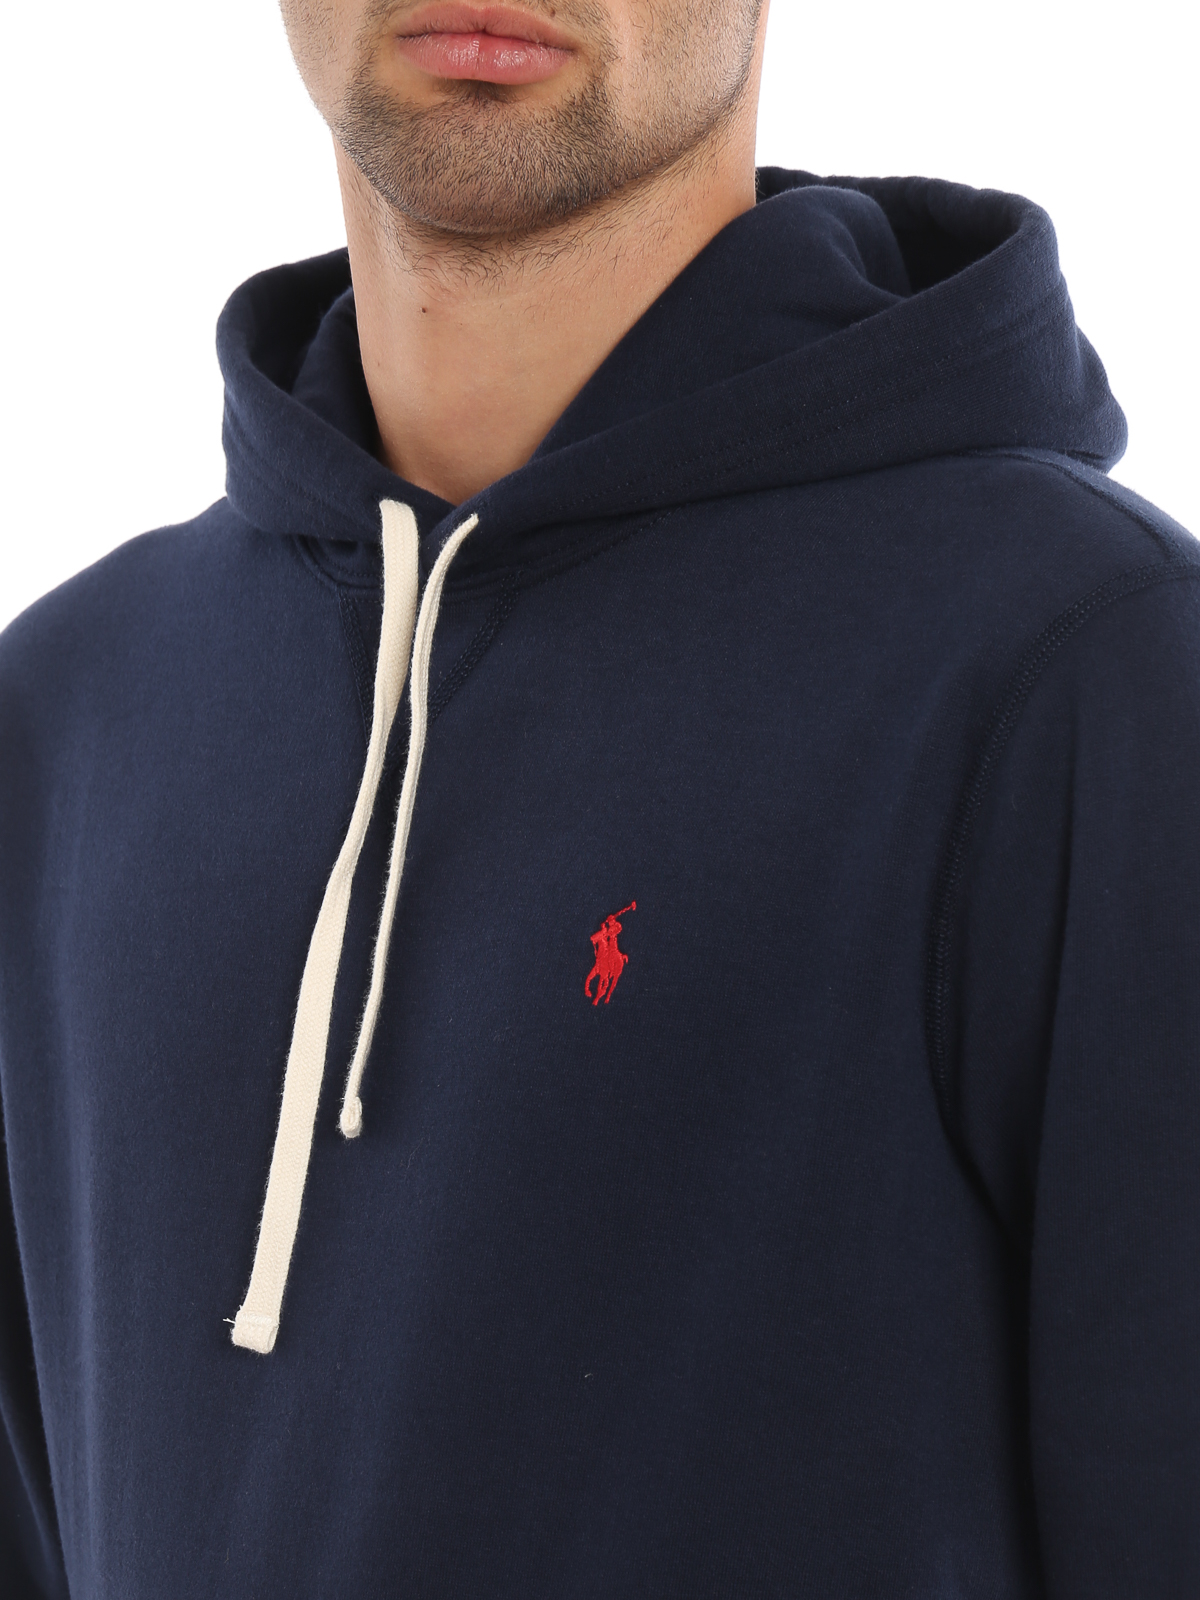 Fleece Sweatshirts - Buy Fleece Sweatshirts Online Starting at